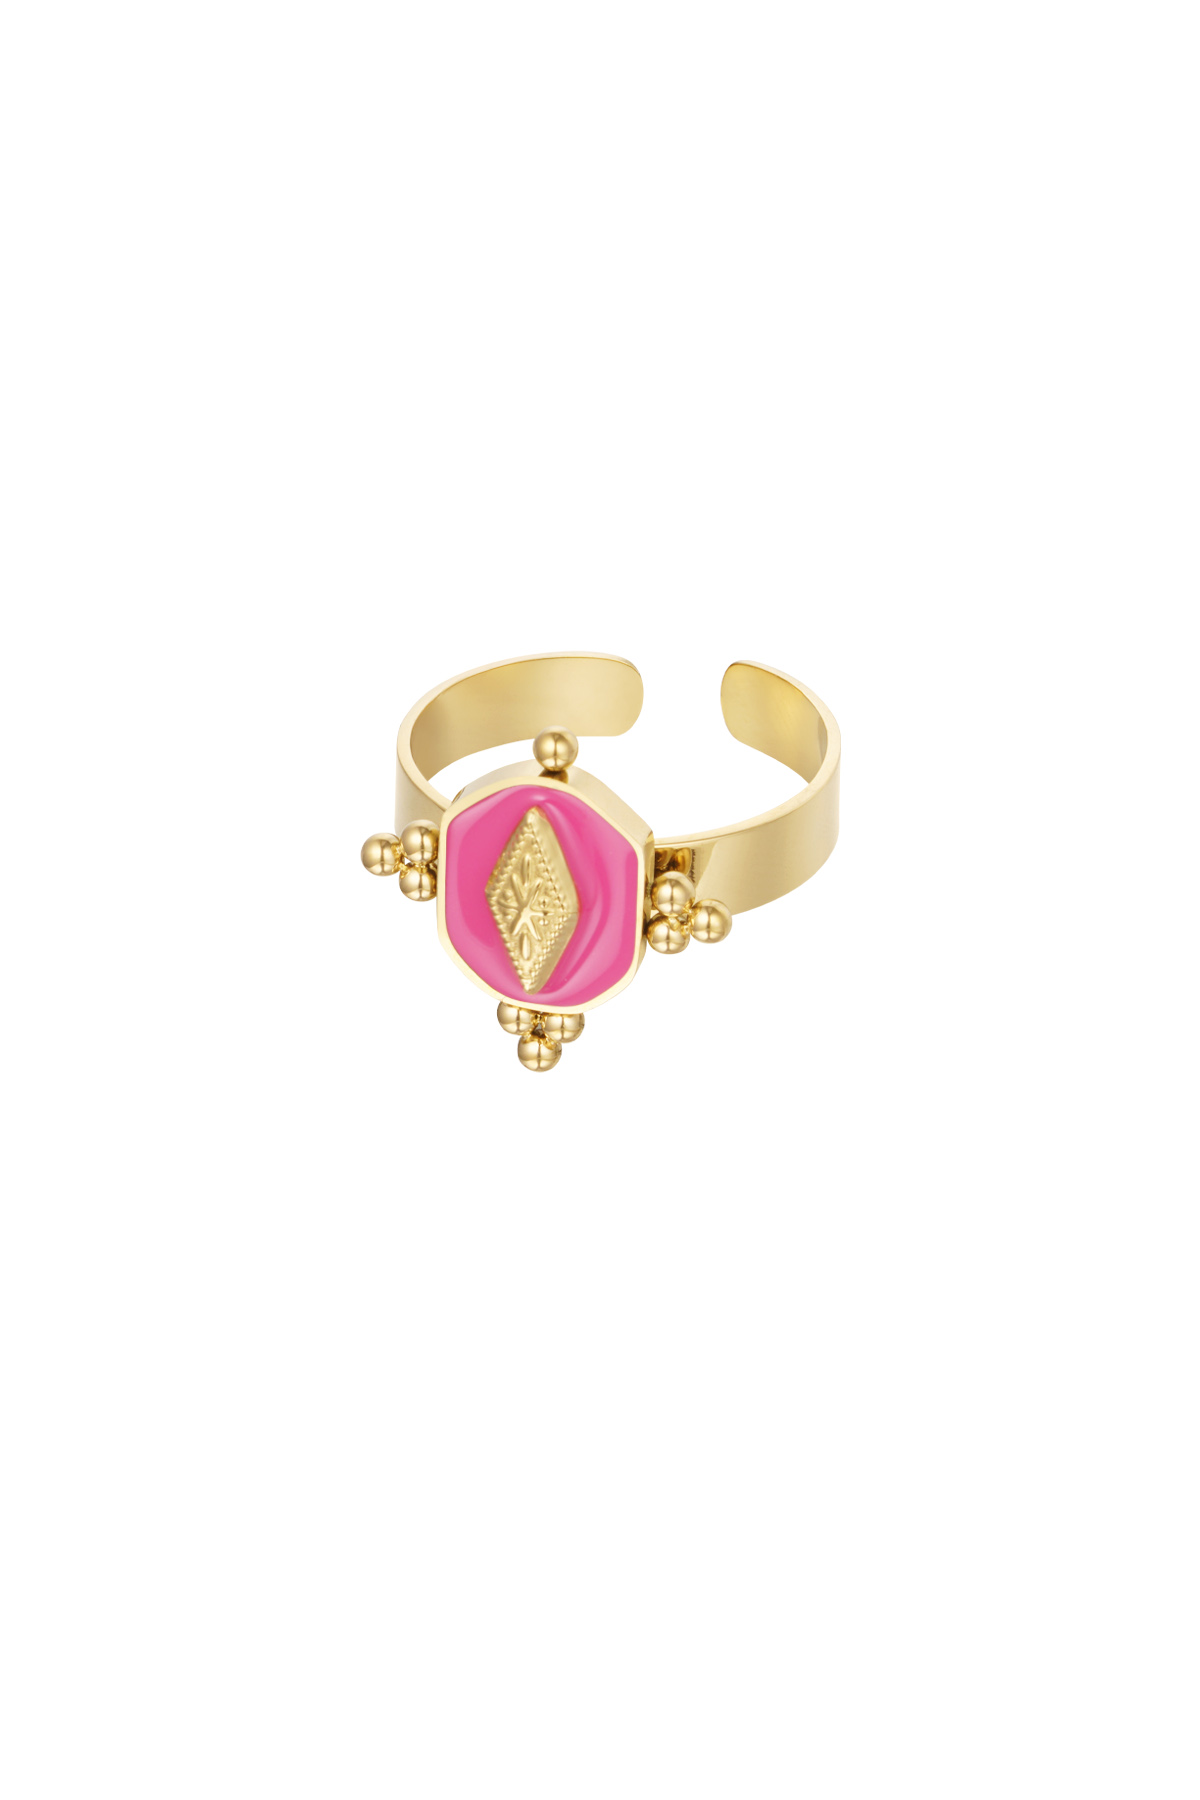 Ring vintage look gekleurd - goud/fuchsia